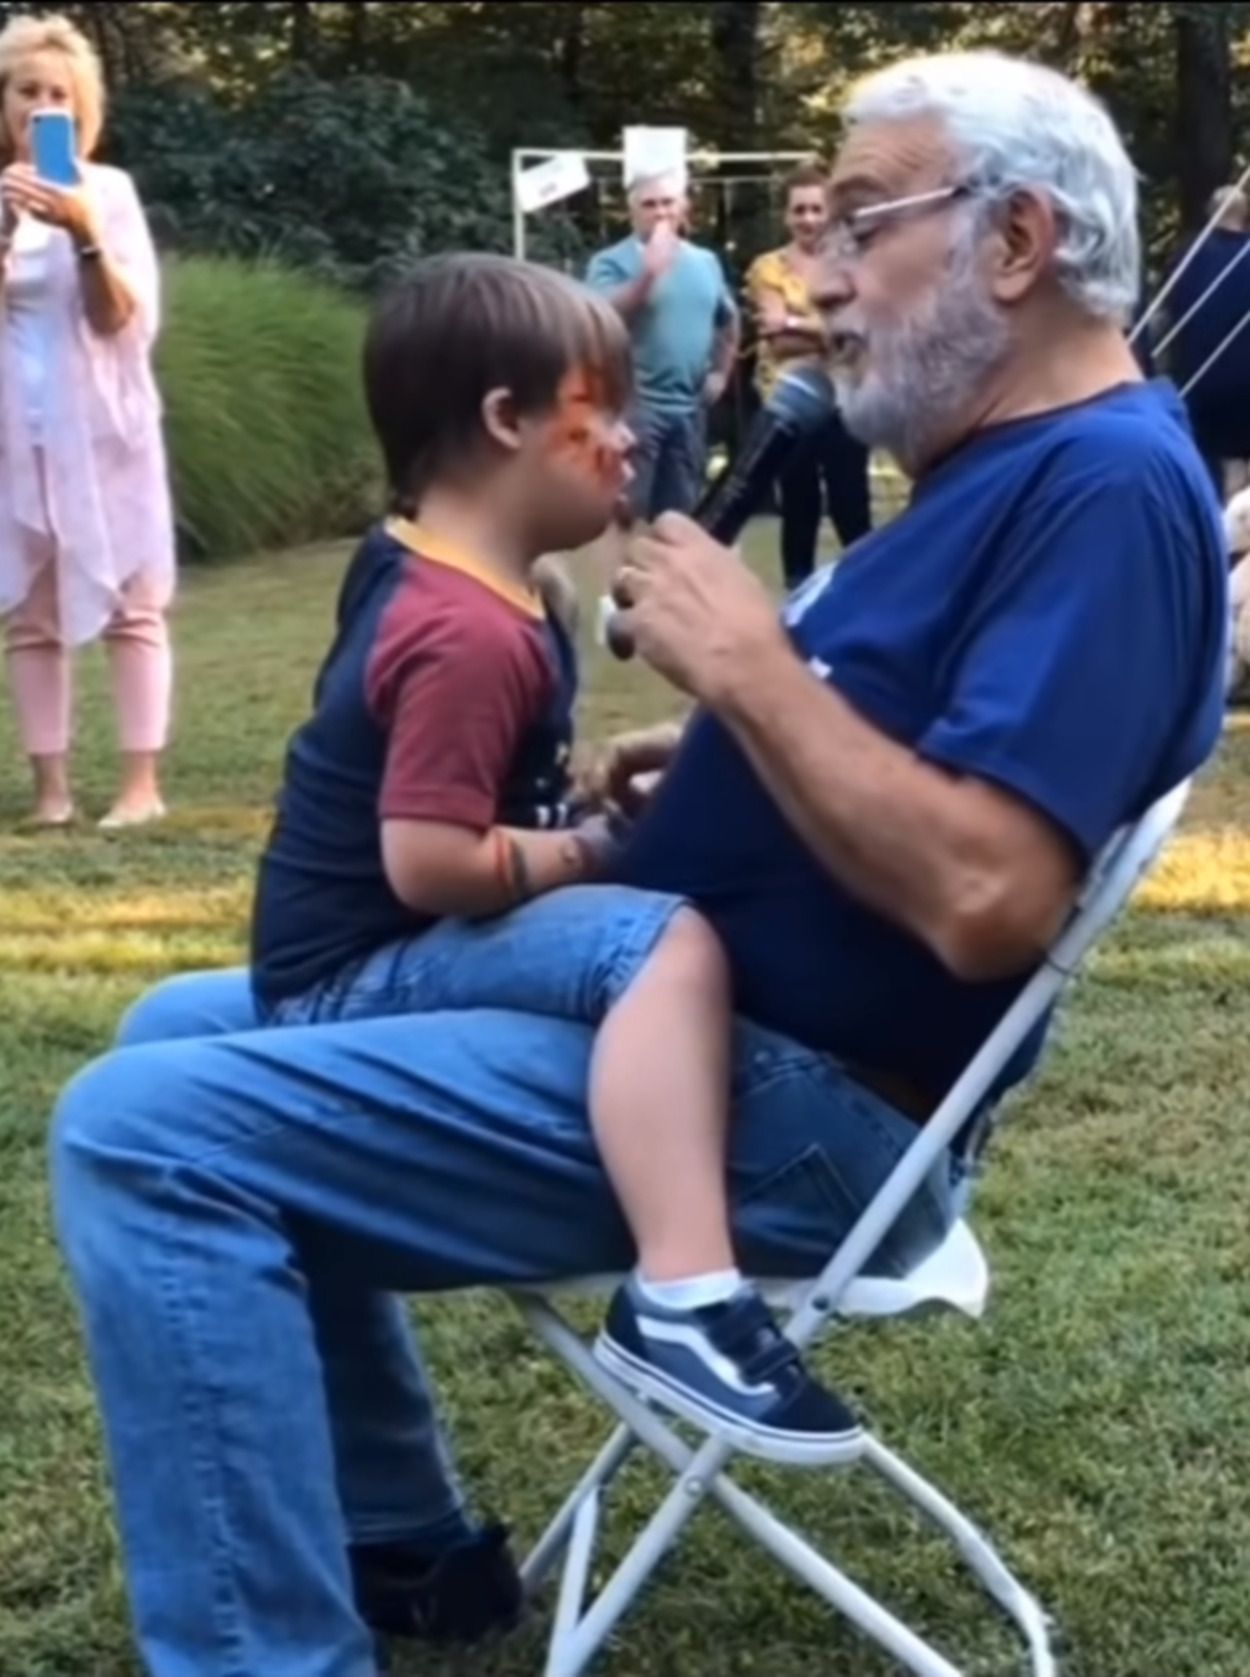 Pura ternura: el vídeo viral de un abuelo cantando a su nieto que conmueve en las redes